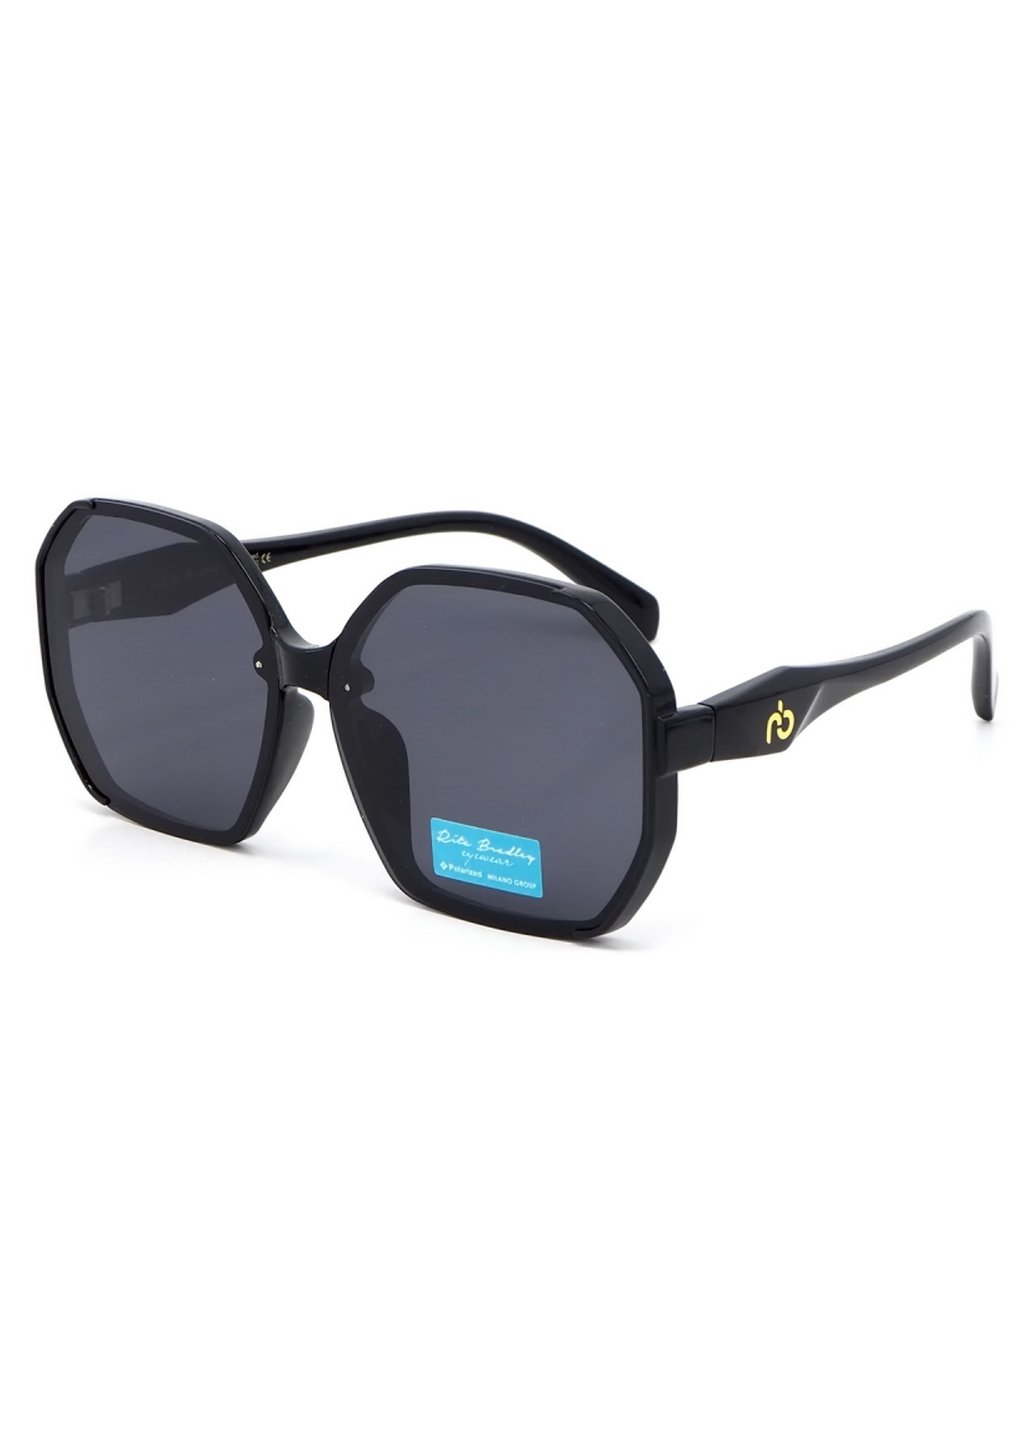 Купить Женские солнцезащитные очки Rita Bradley с поляризацией RB729 112067 в интернет-магазине